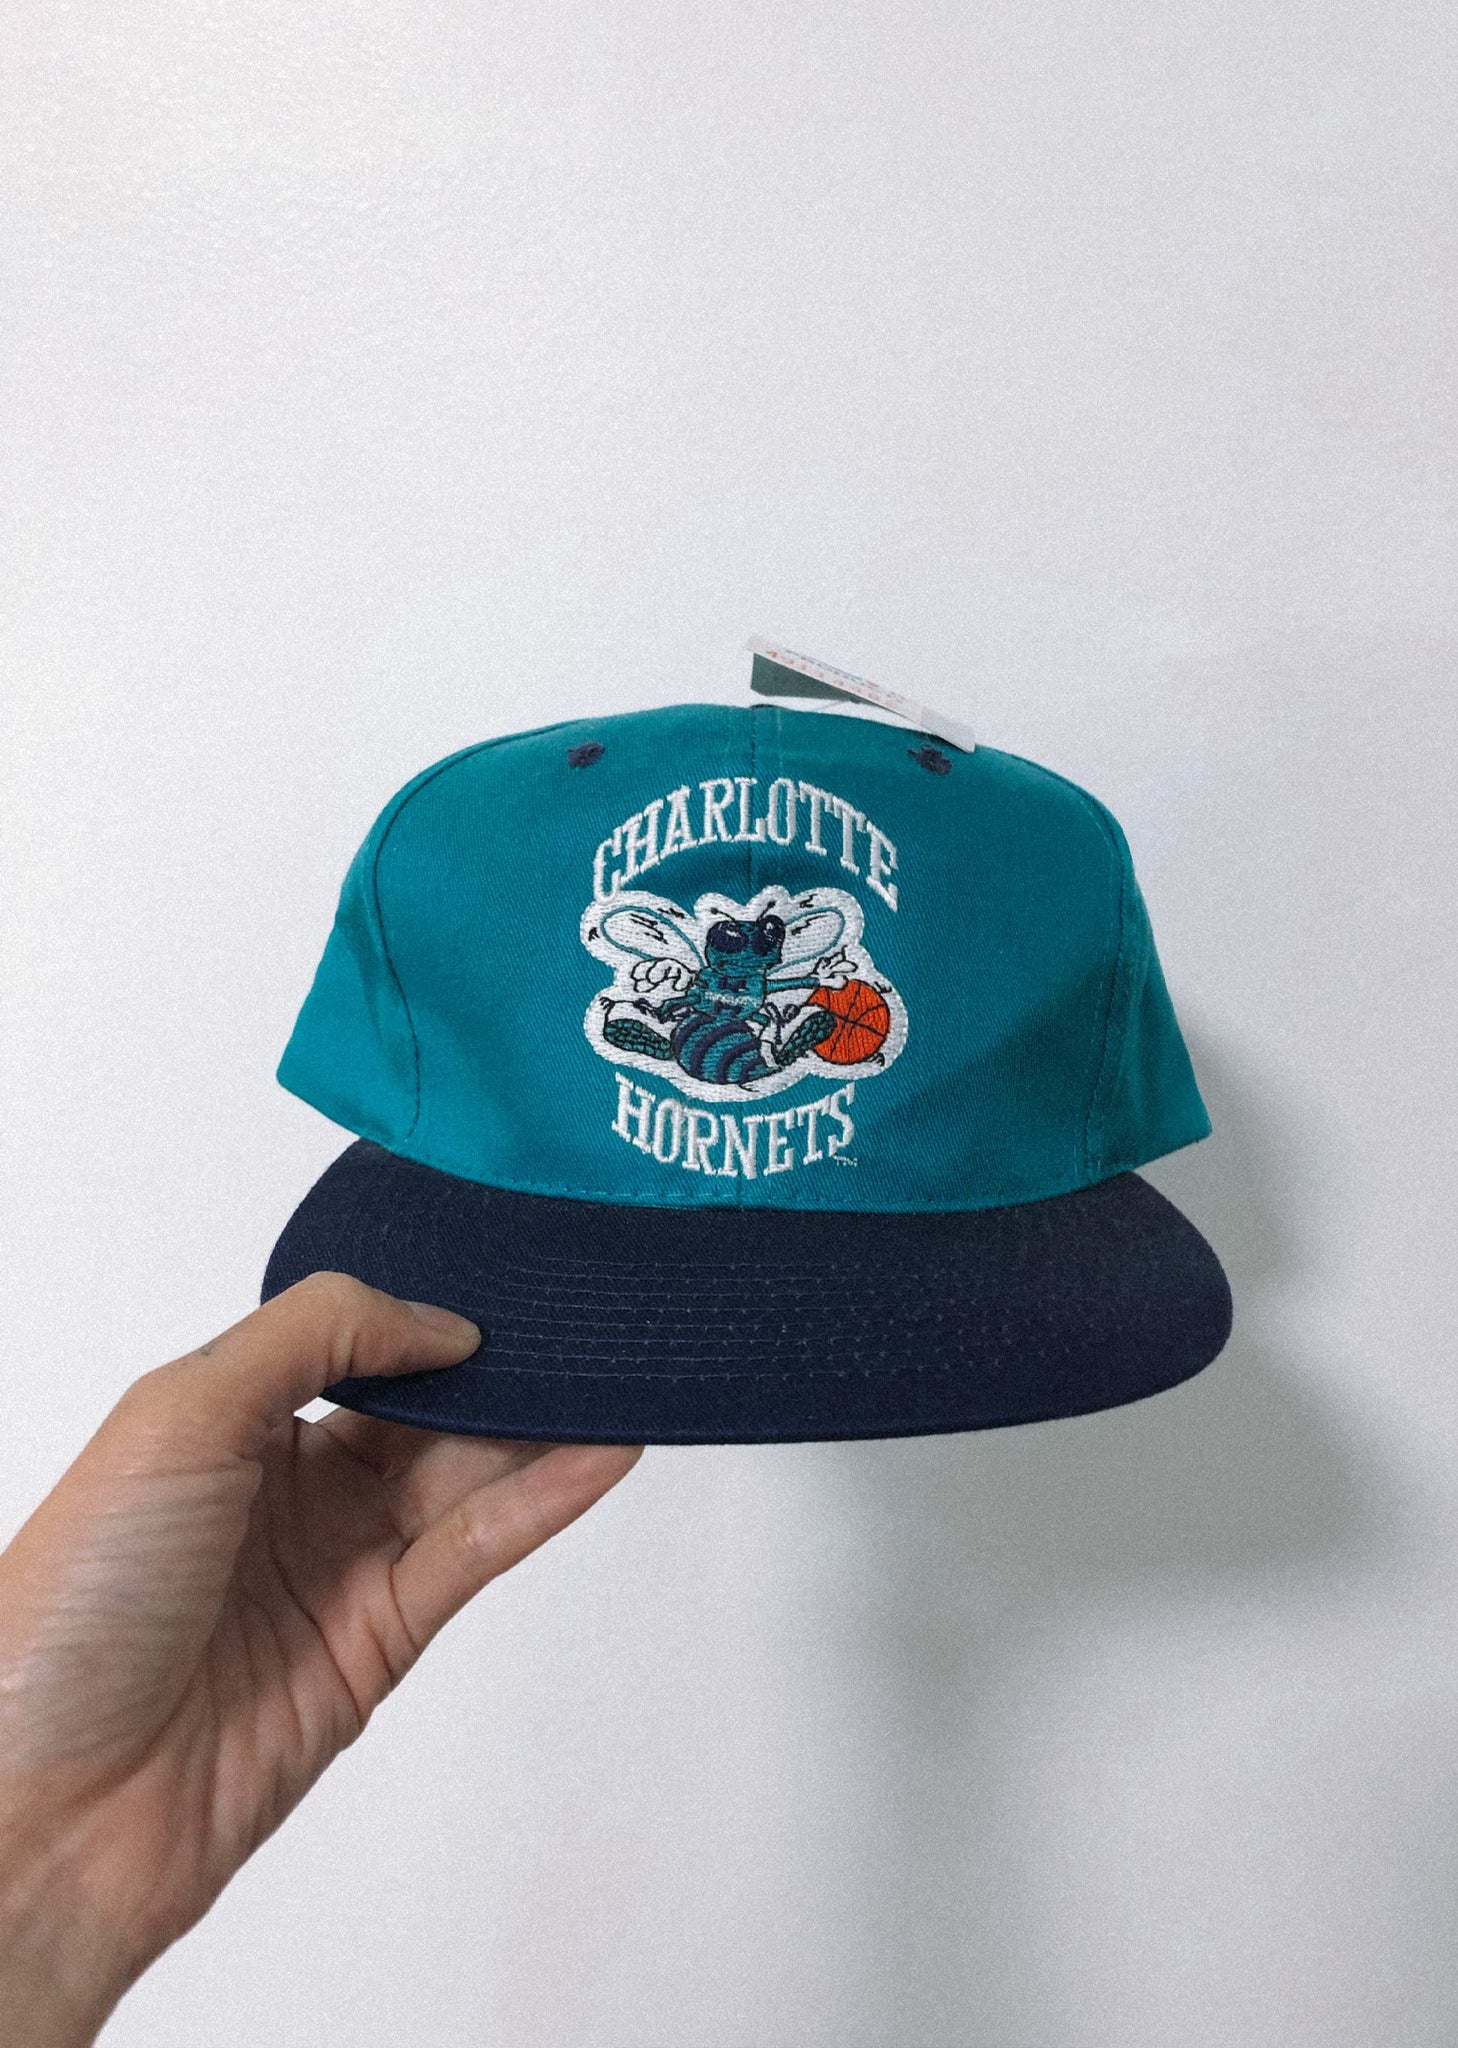 Charlotte Hornets Vintage 90s Starter Snapback Hat- One Size Fits